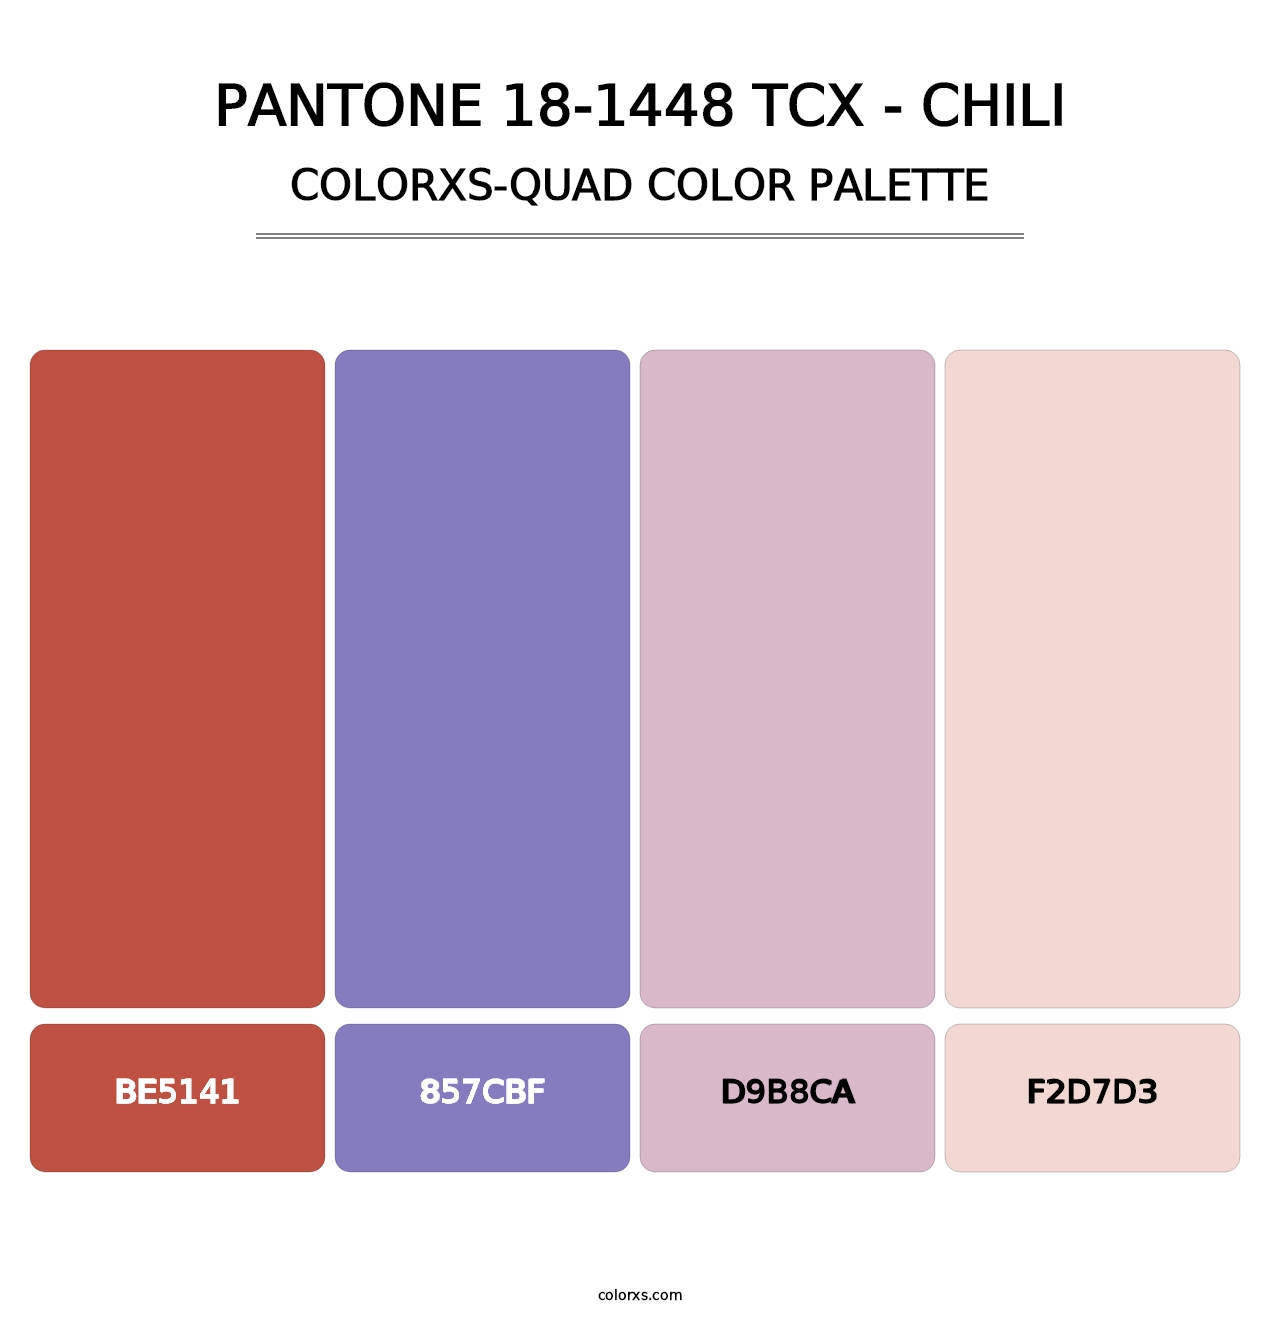 PANTONE 18-1448 TCX - Chili - Colorxs Quad Palette